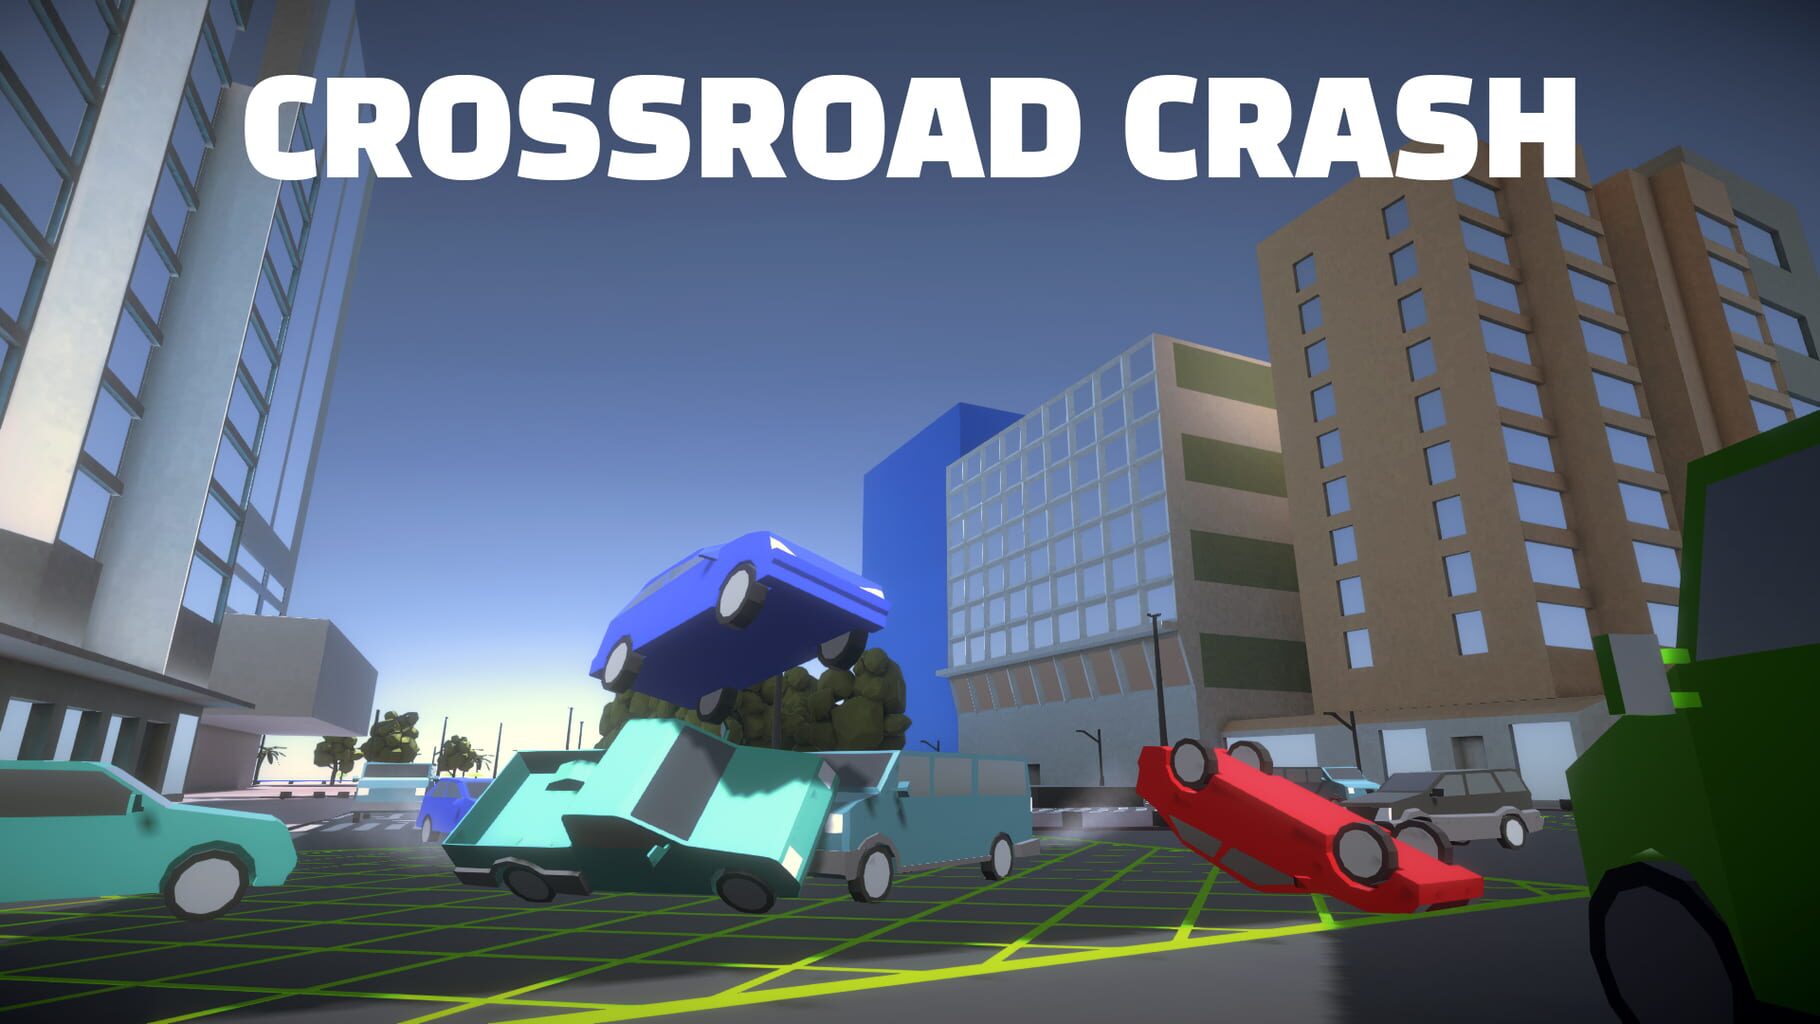 Crossroad Crash artwork